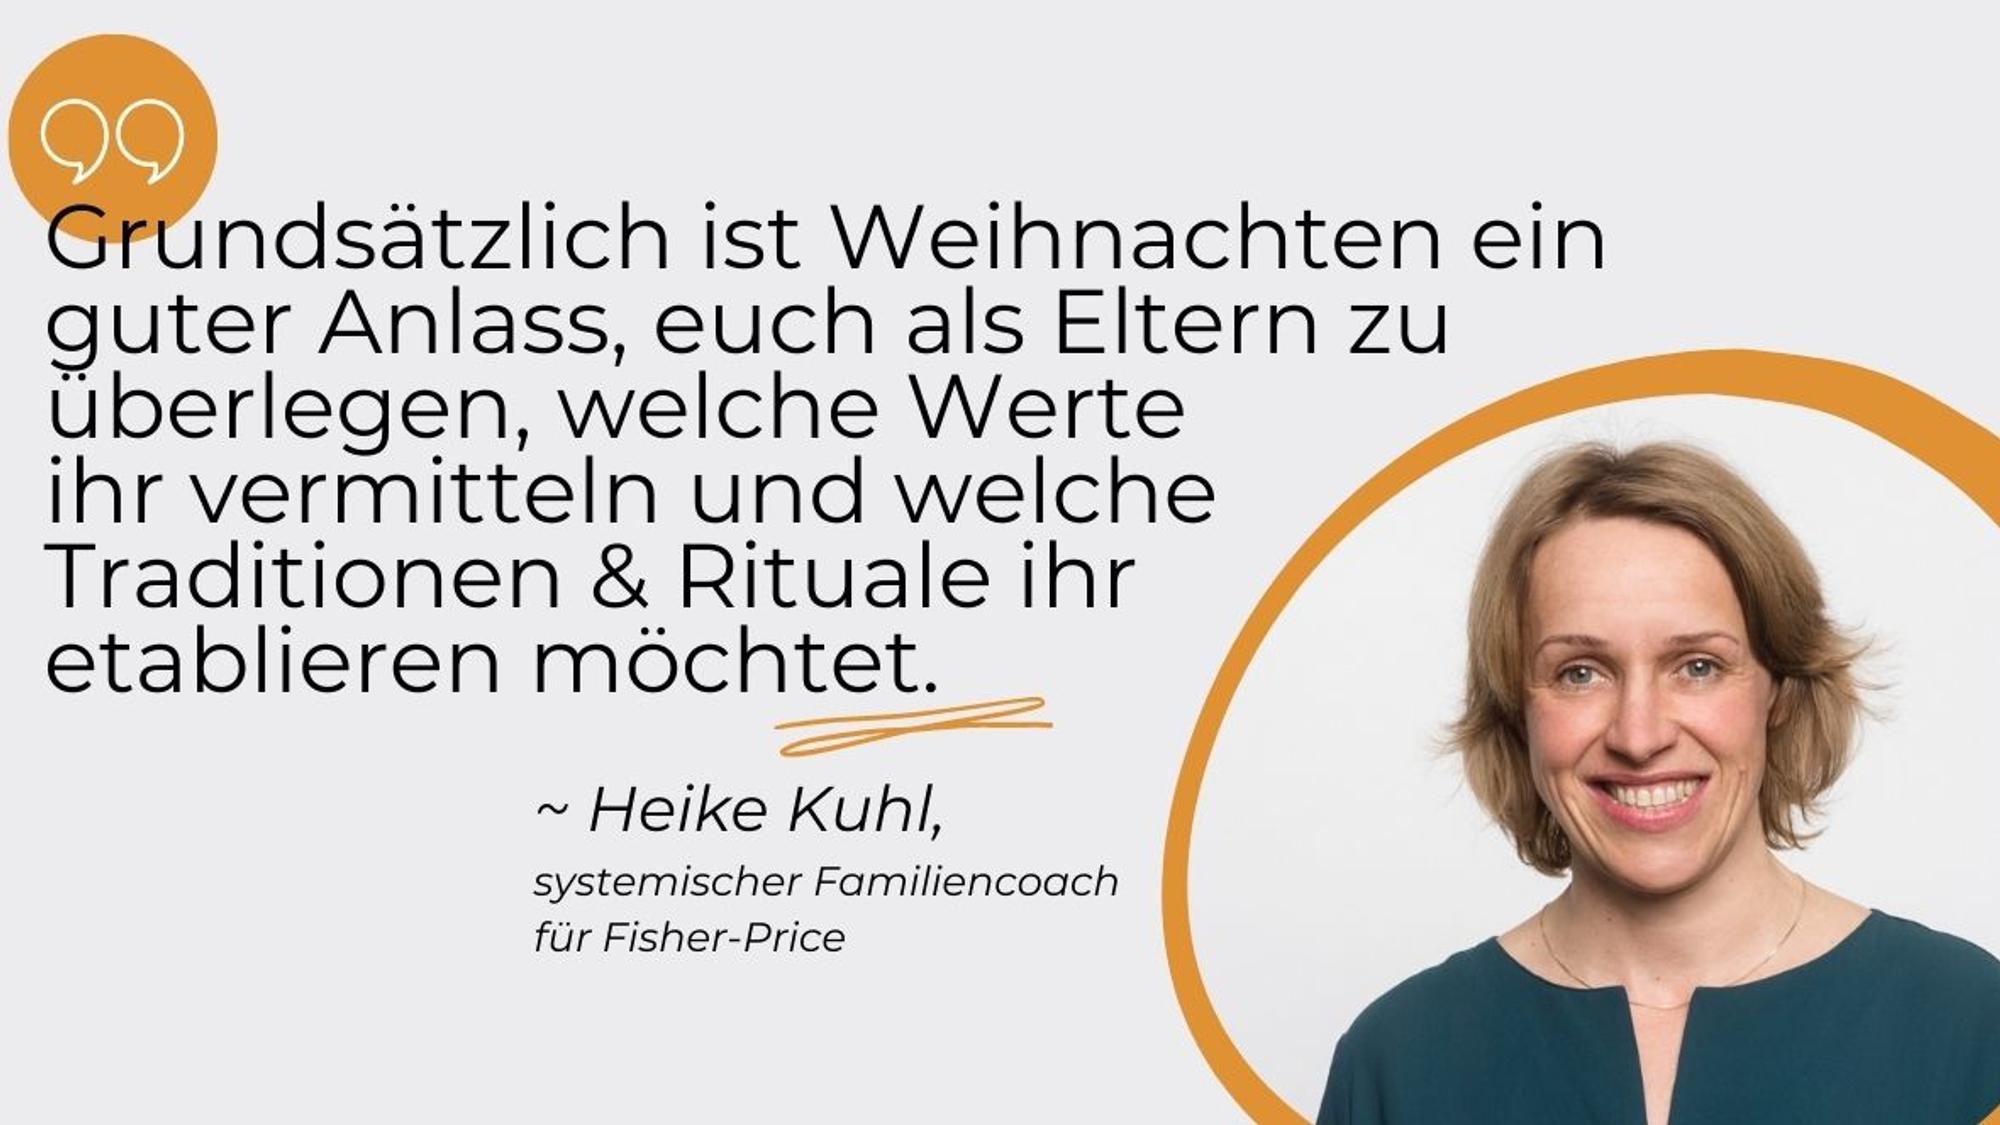 Heike Kuhl, systemischer Familiencoach für Fisher-Price